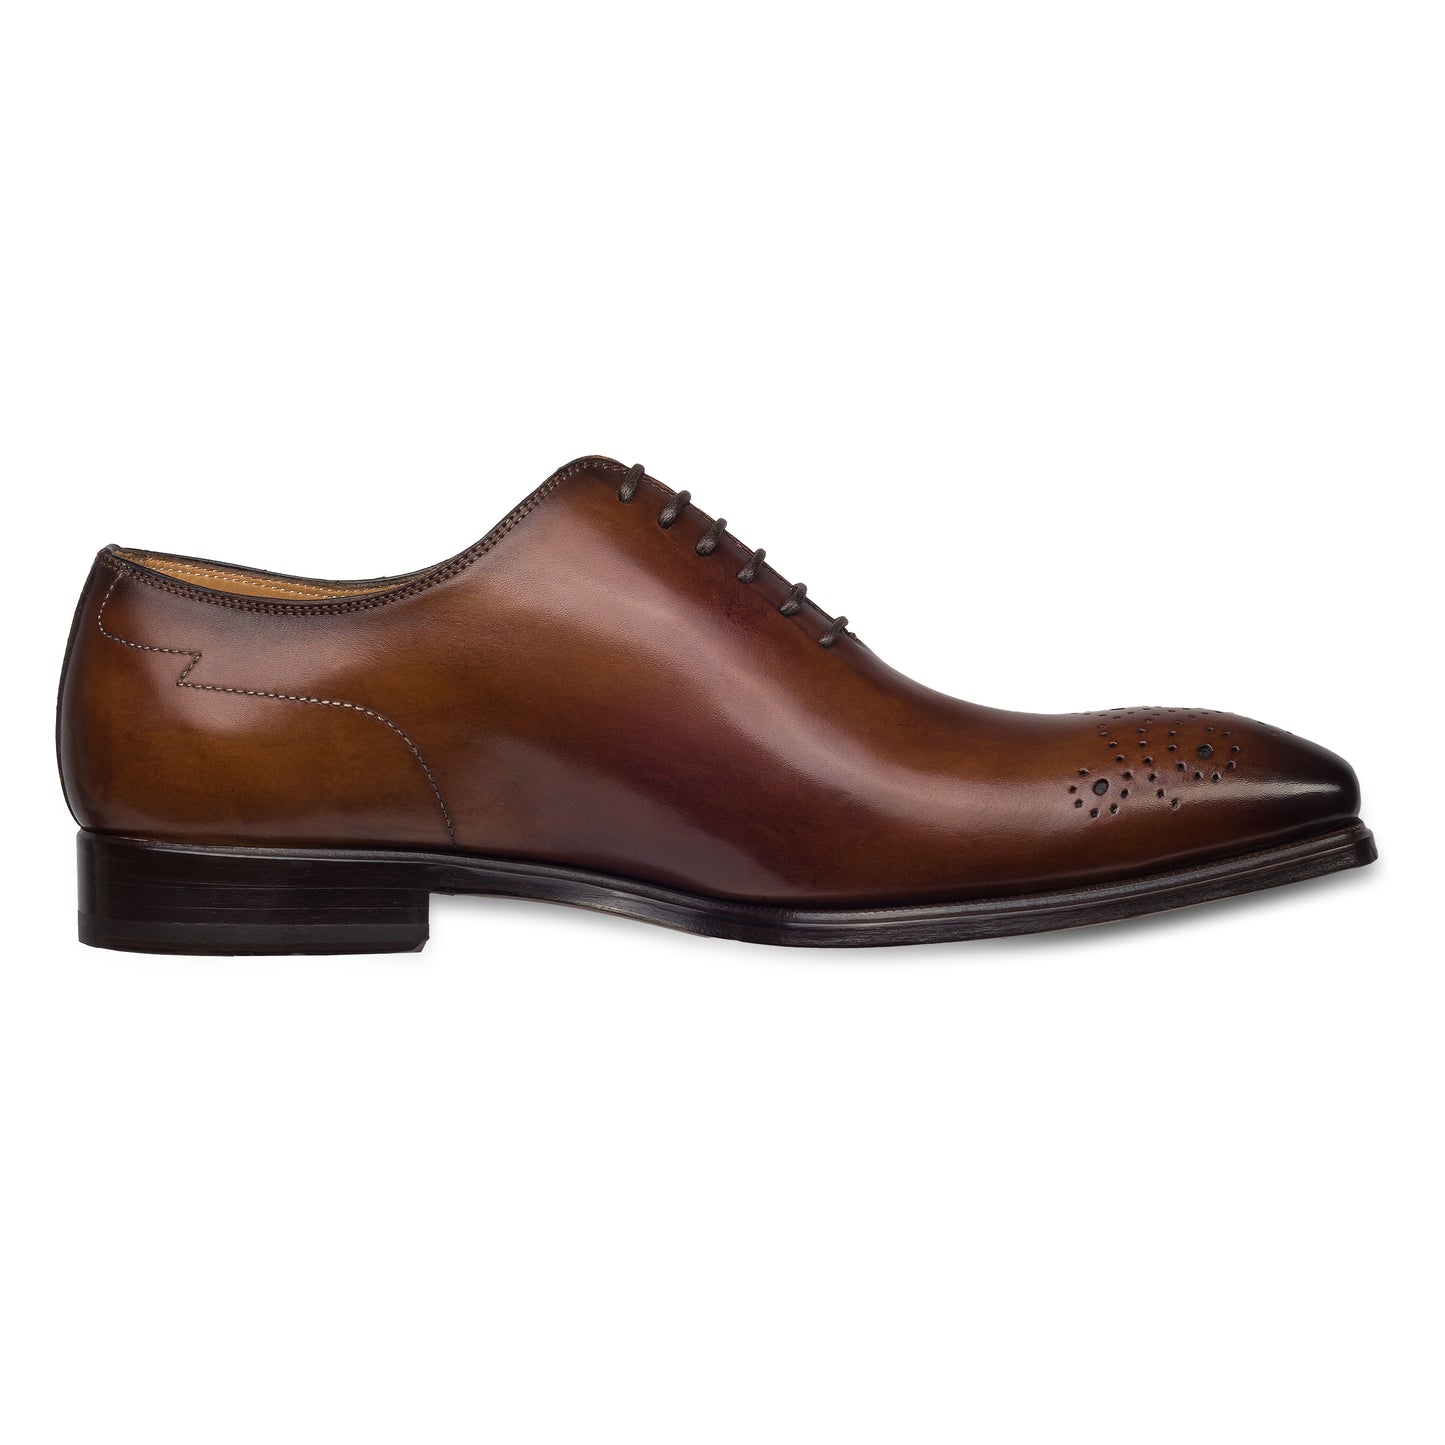 Branchini - Italienische Herren Anzugschuhe Oxford / Onecut in braun. Aus Kalbsleder handgefertigt und durchgenäht. Seitliche Ansicht der Innenseite linker Schuh.